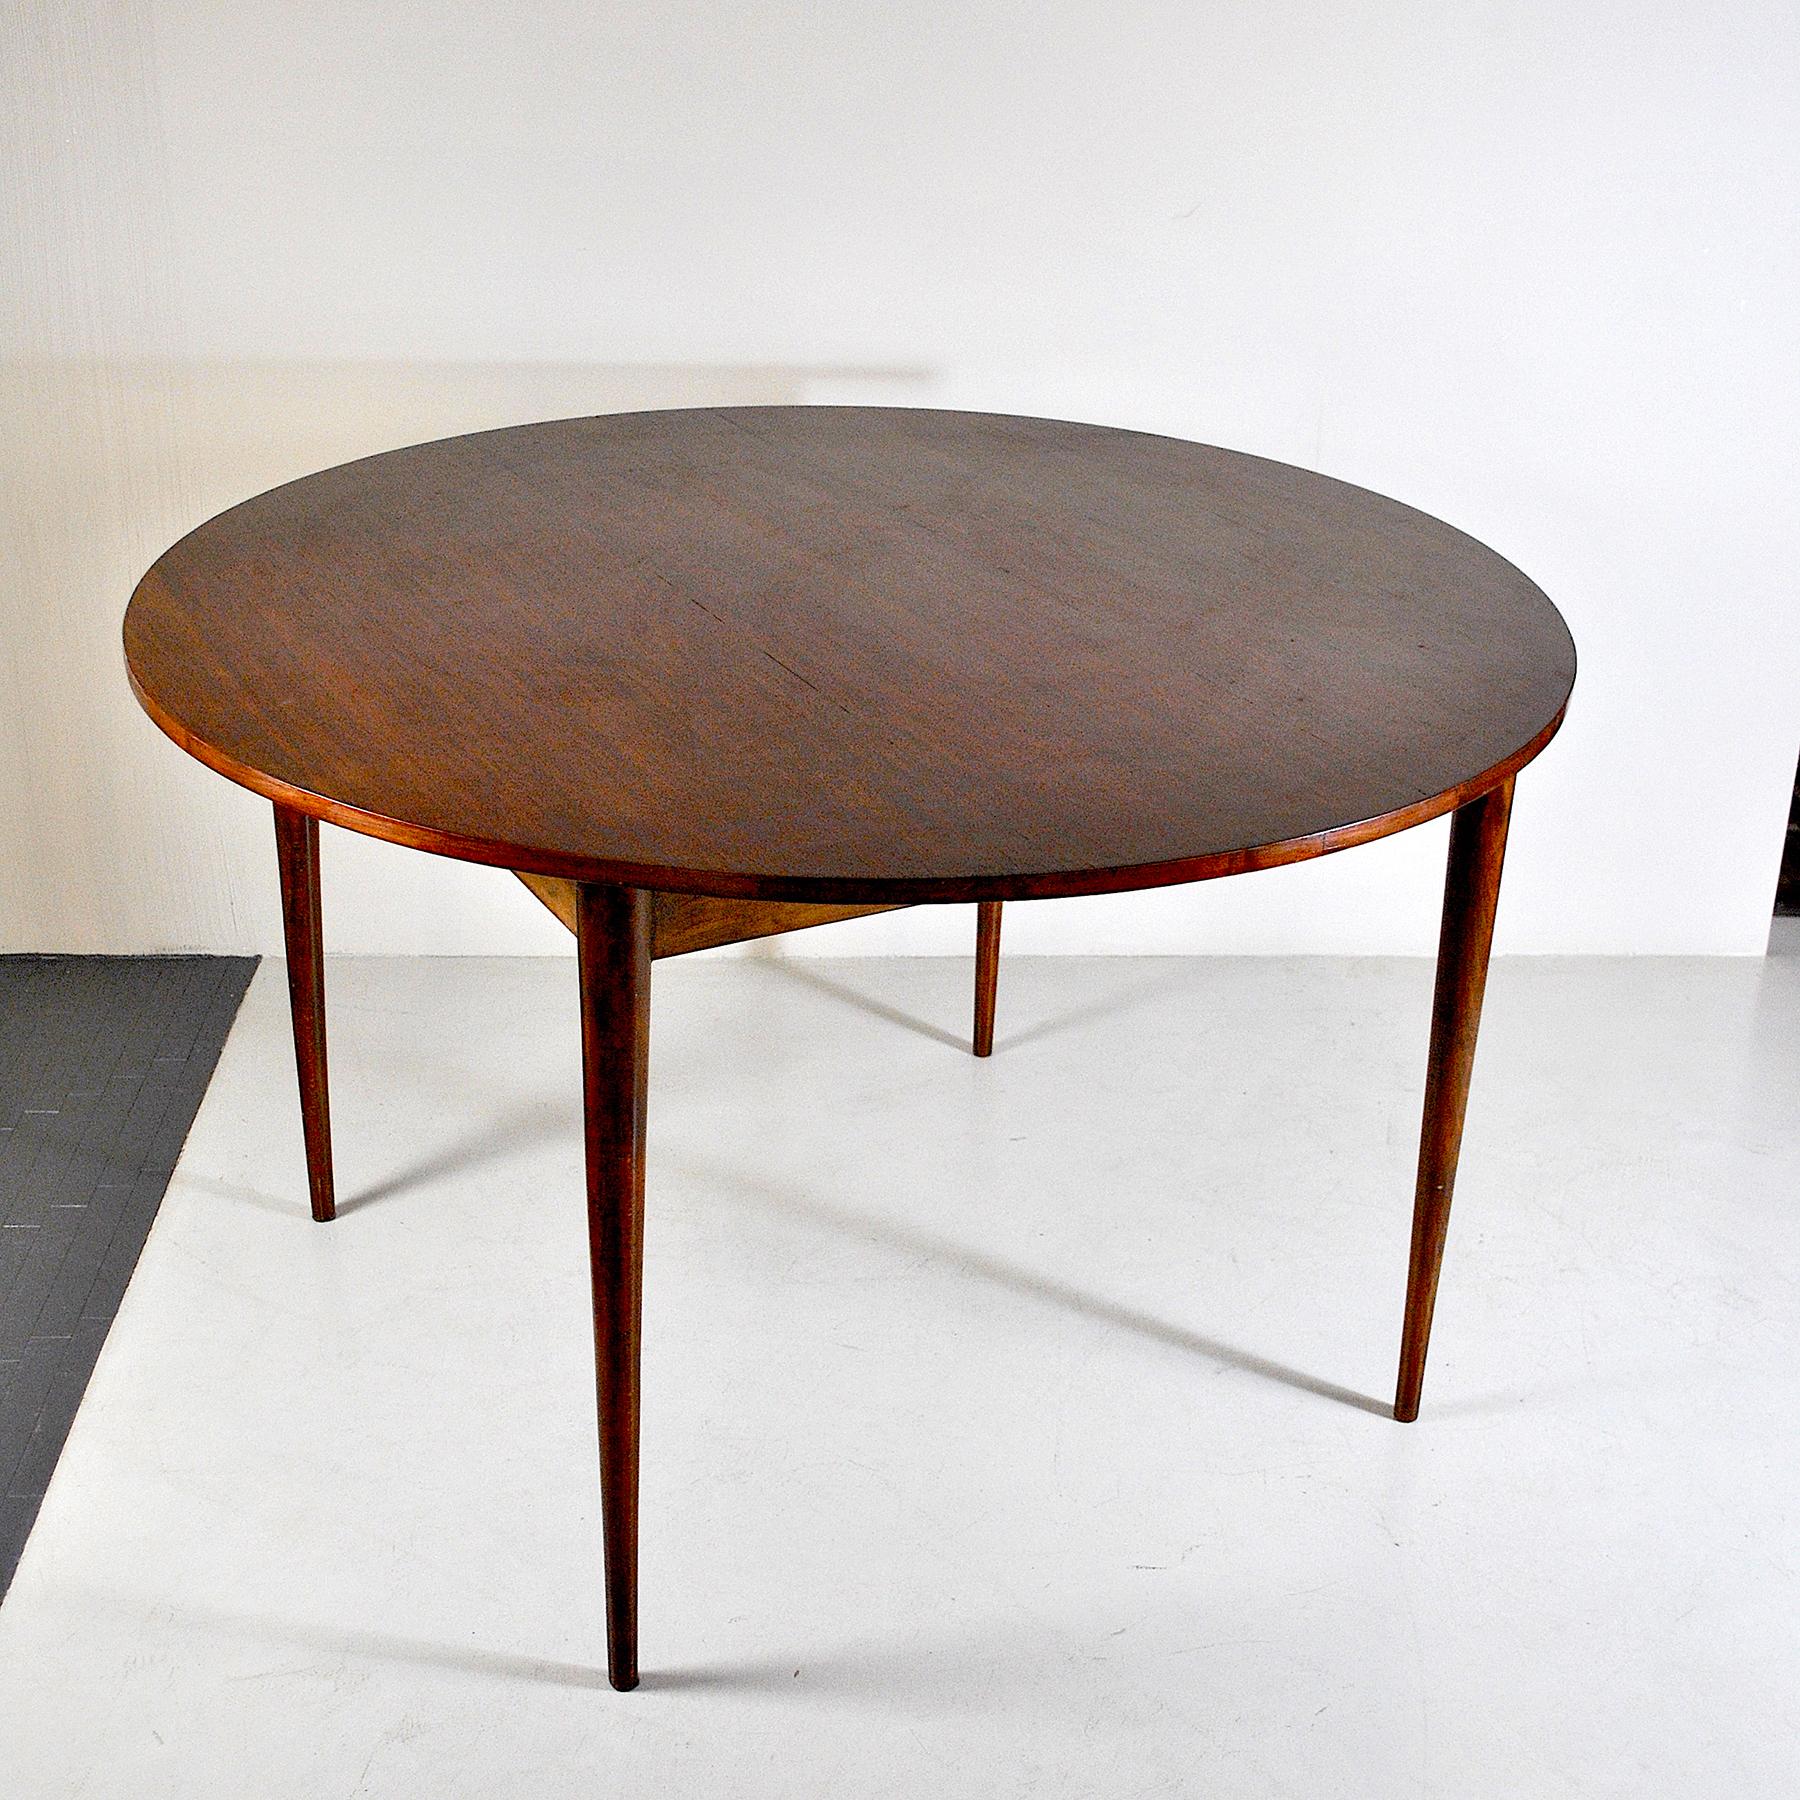 Wahrscheinlich das erste Tischmodell Flip-Flap von Dyrlung Smith. Der Tisch kann mit dem Flip-Flap-System einen Durchmesser von max. 190 cm bieten.
Der Name Flip-Flap-Tisch beruht auf der Art und Weise, wie sich die Blätter ausziehen.
Auf der